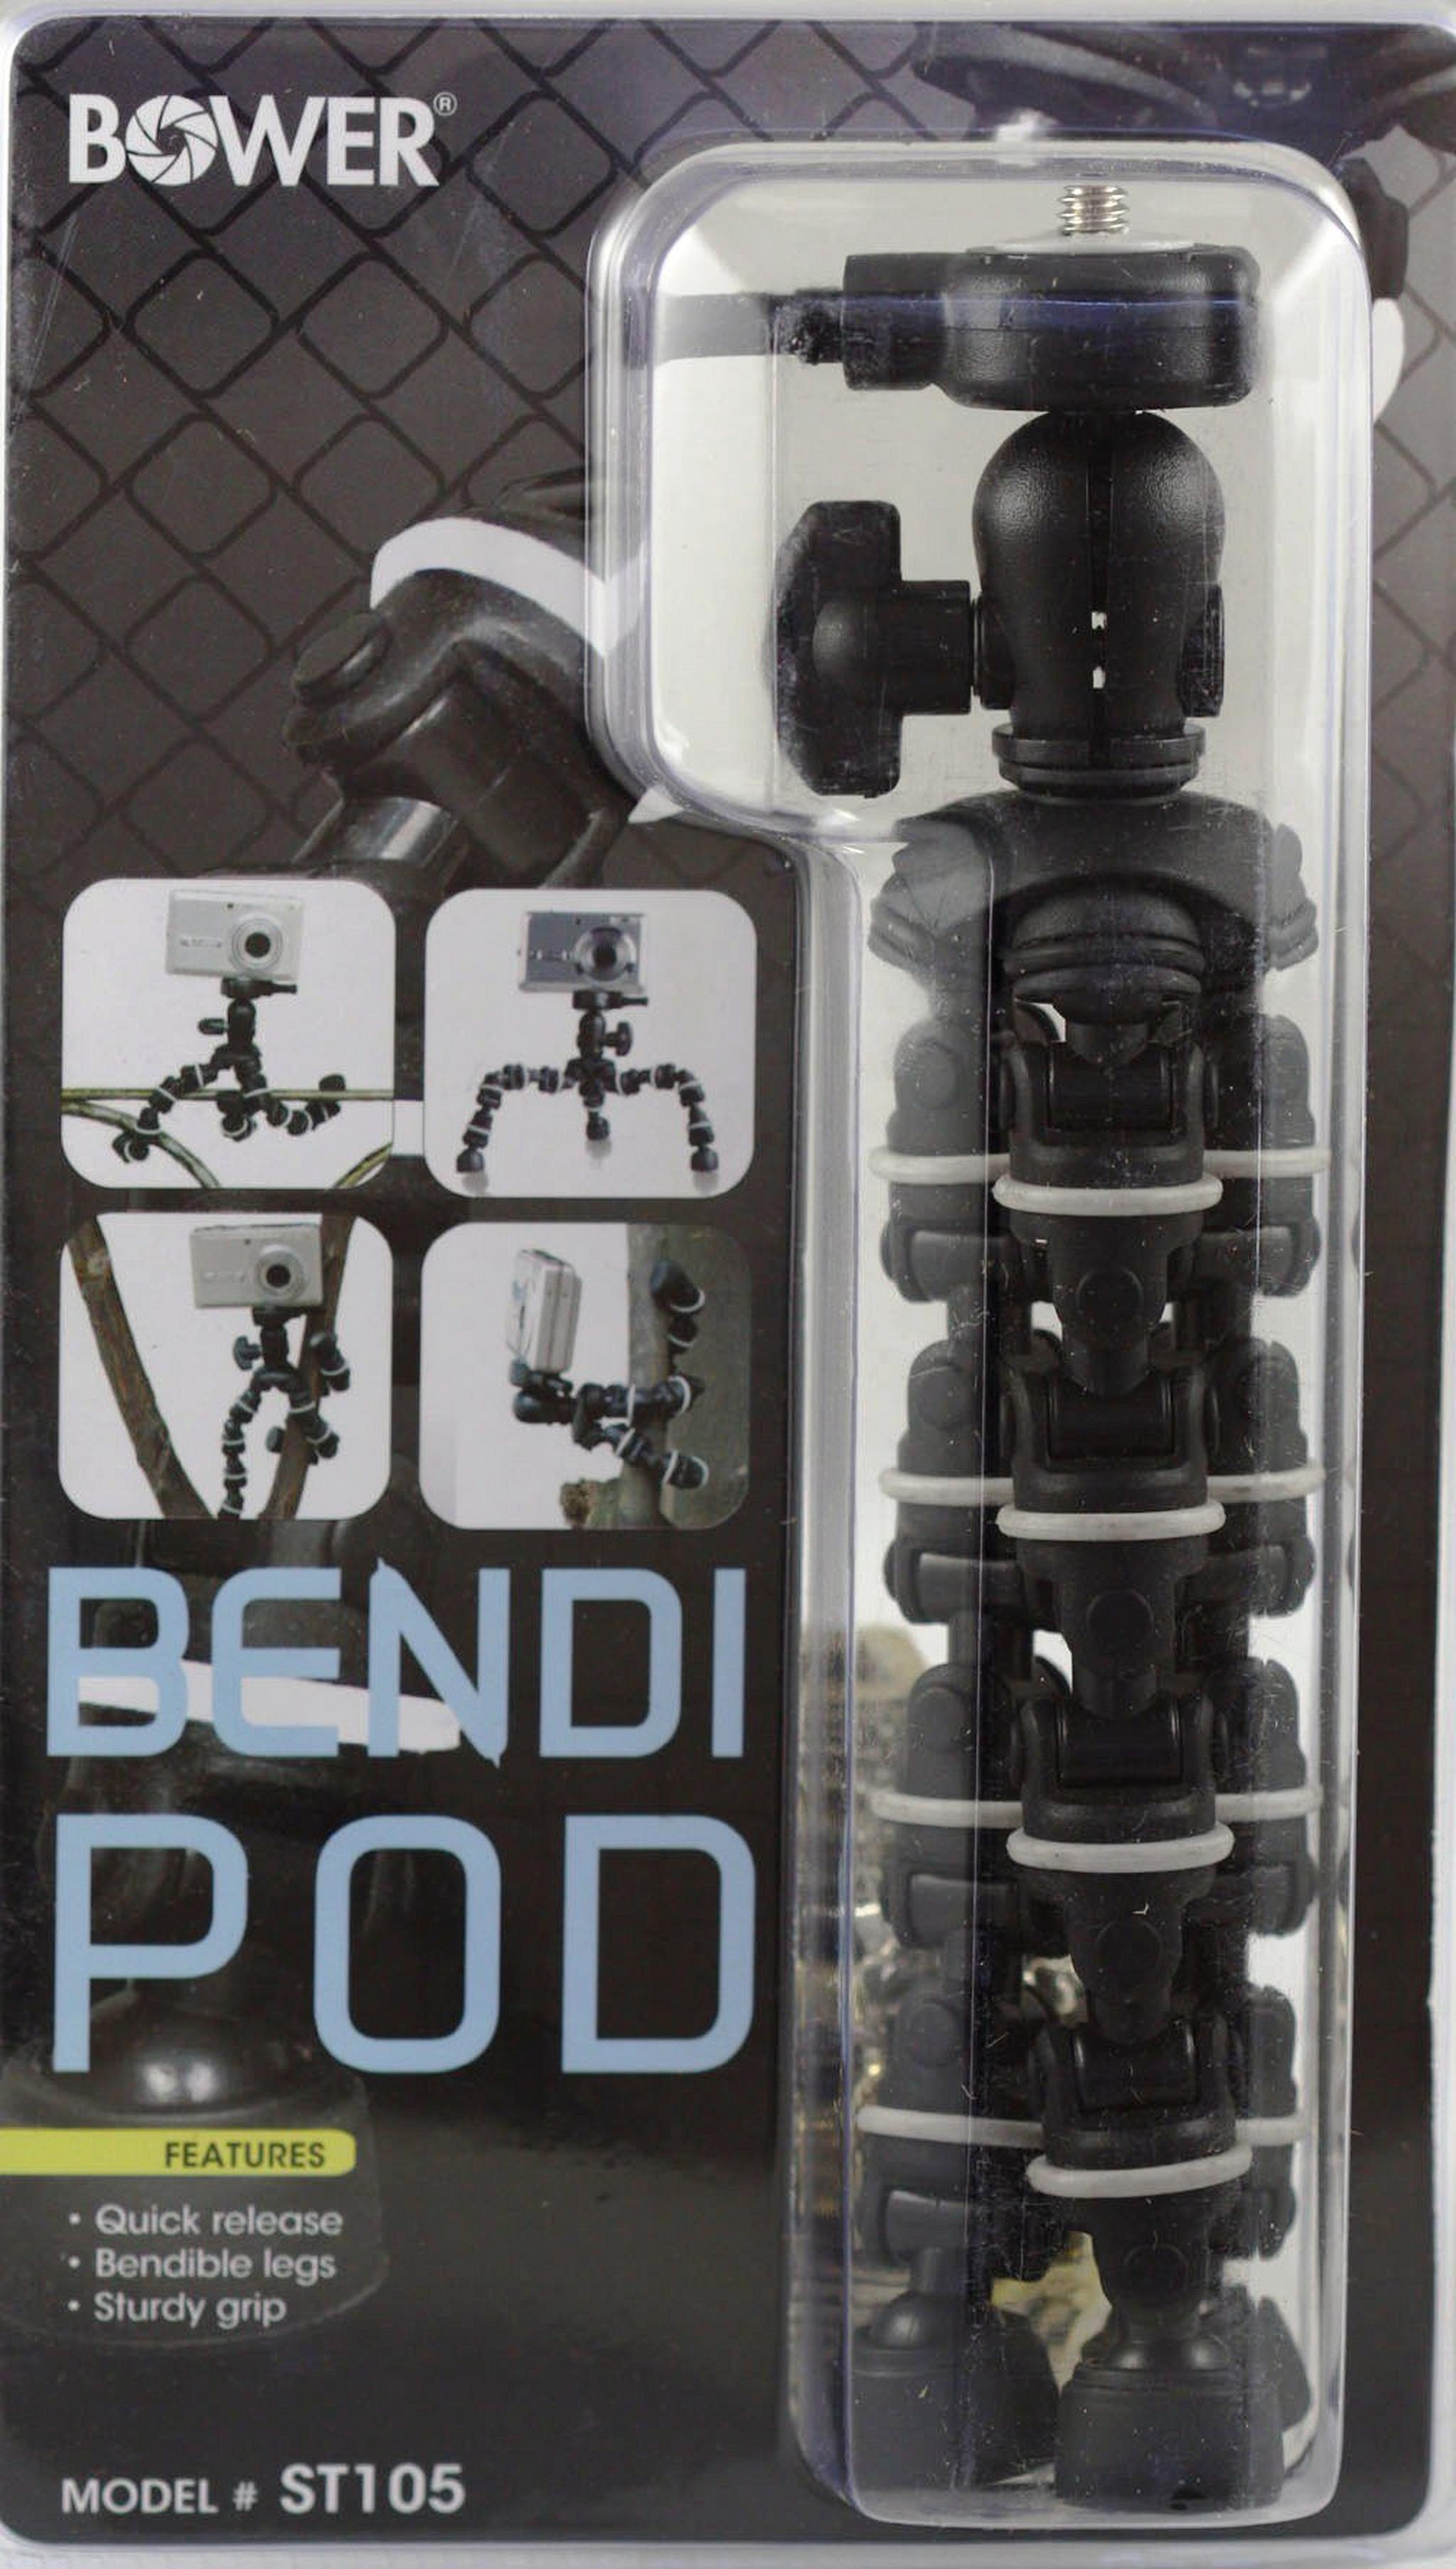 Bower ST105 Bendipod Flexible Camera Tripod - Black/White